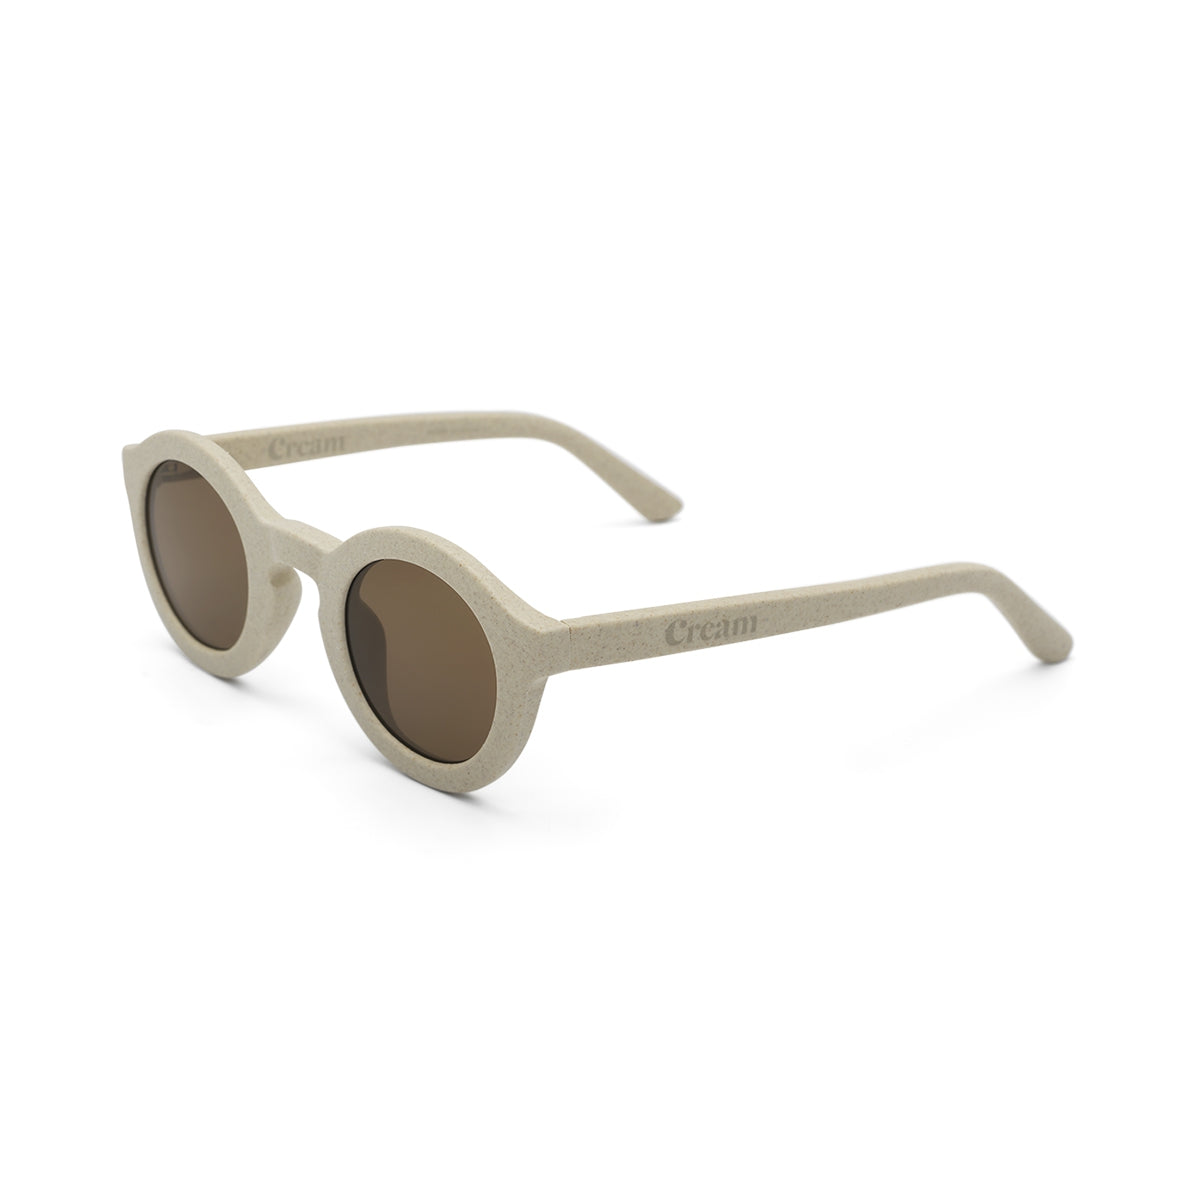 Kindersonnenbrille - Cream 01 | Vanilla